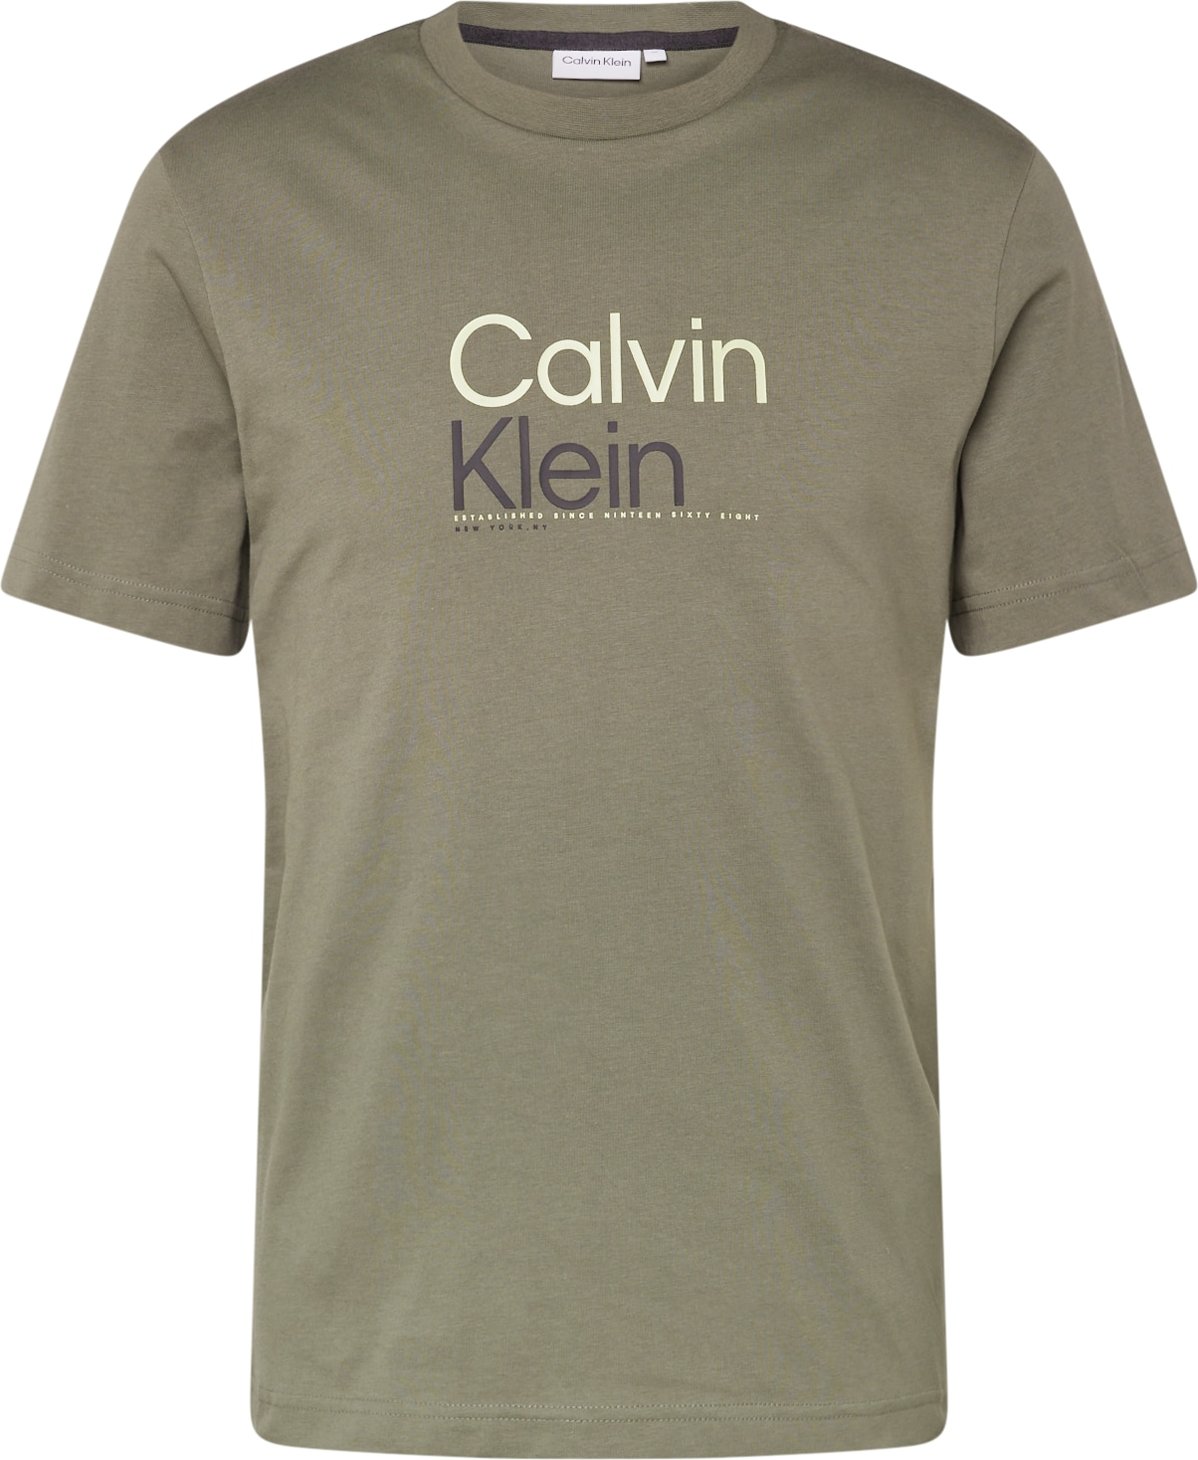 Tričko Calvin Klein khaki / černá / bílá